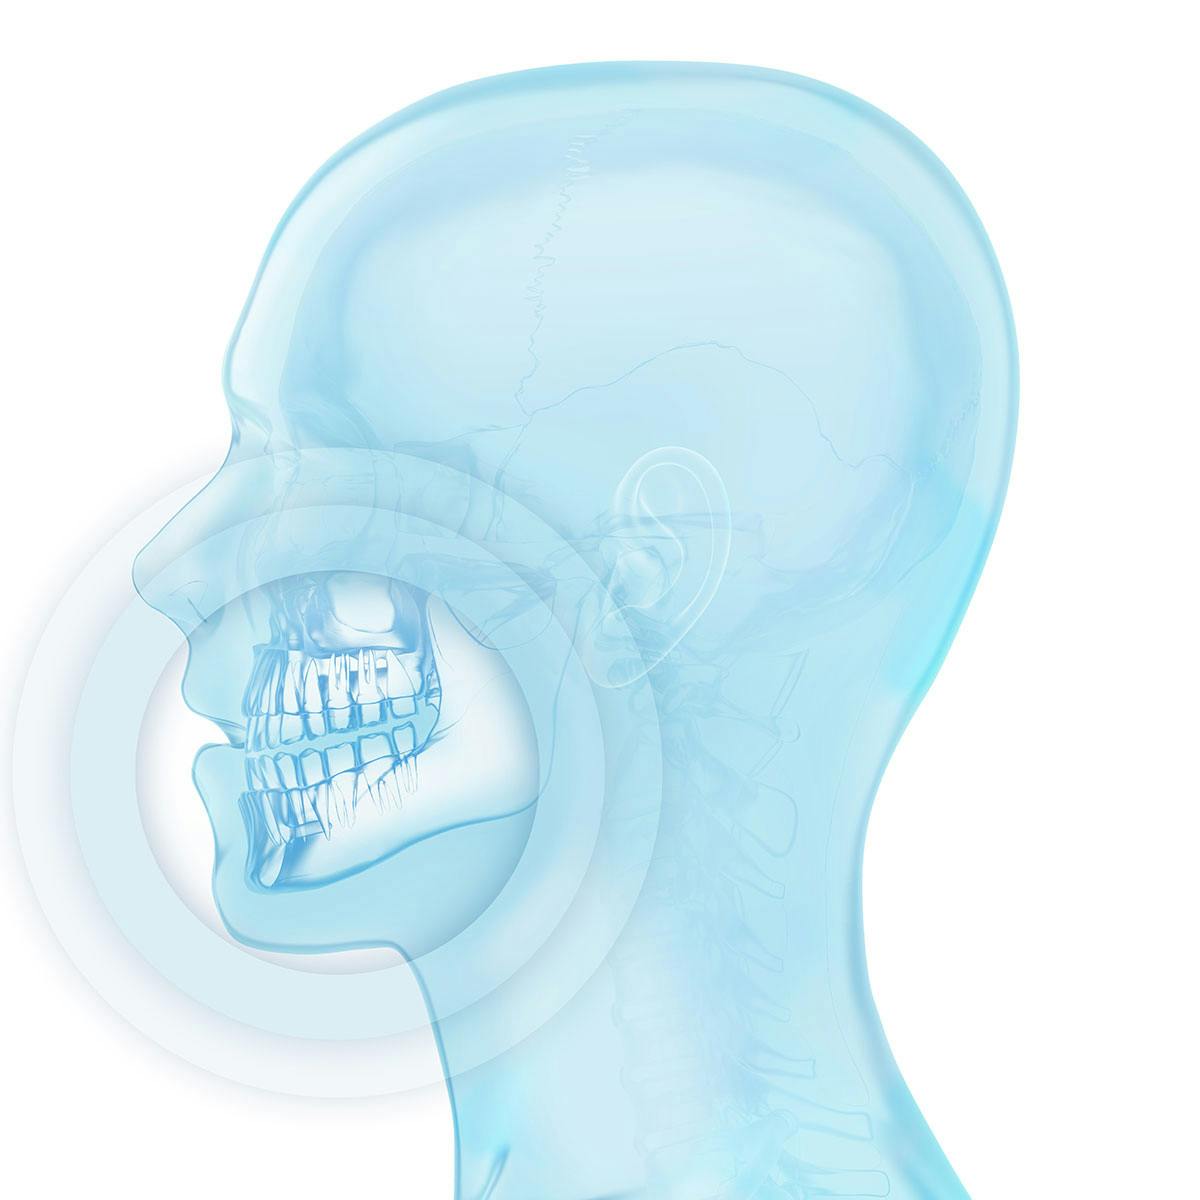 Cabeça humana com ênfase na boca e nos dentes